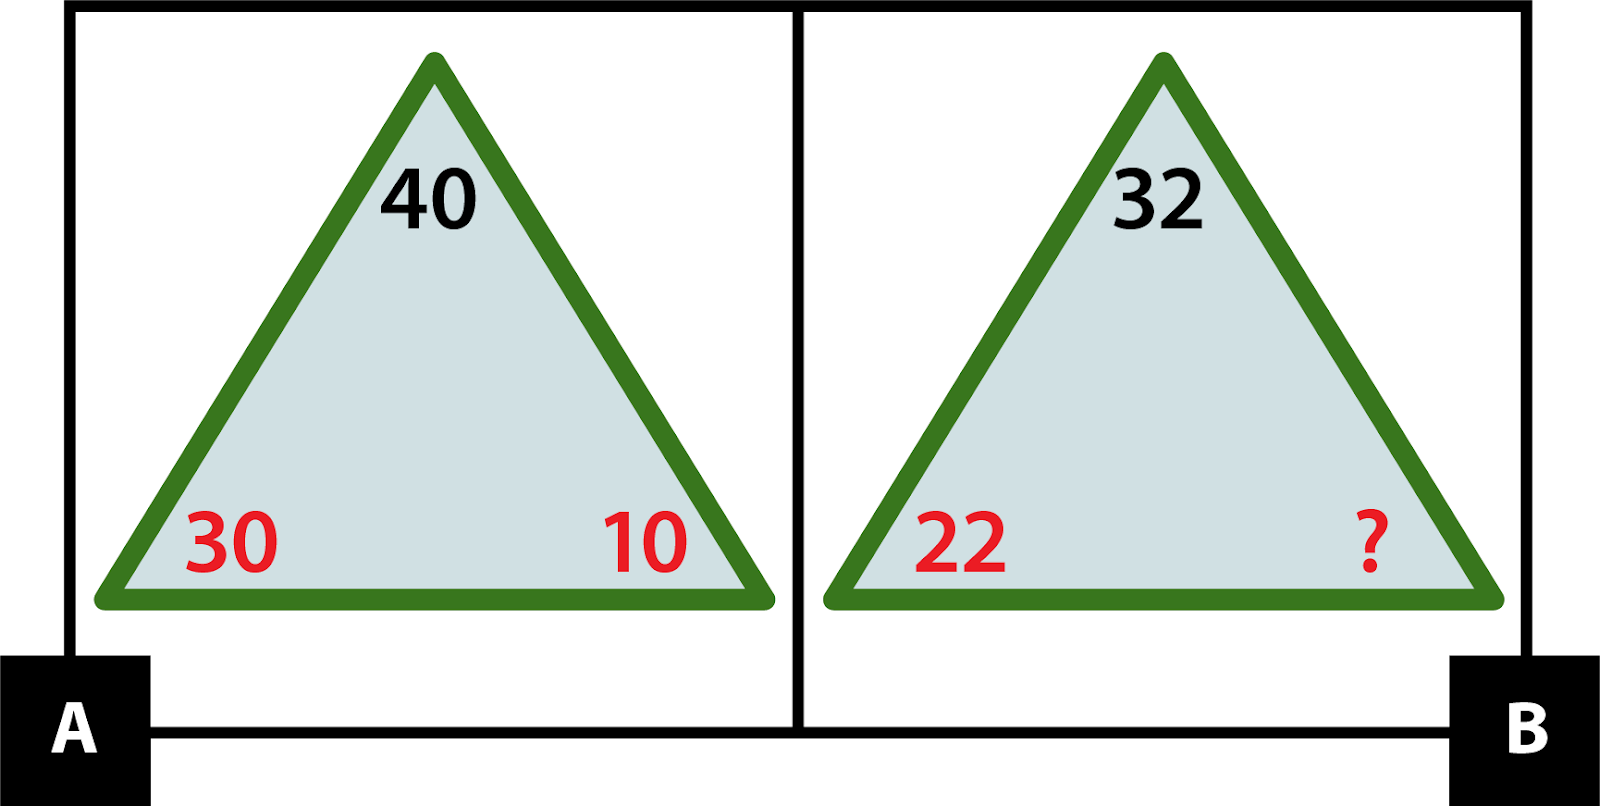 A: Triángulo con un 40 negro en la esquina superior, un 10 rojo en la esquina inferior derecha y un 30 rojo en la esquina inferior izquierda. B: Triángulo con un 32 negro en la esquina superior, un signo de interrogación rojo en la esquina inferior derecha y un 22 rojo en la esquina inferior izquierda.